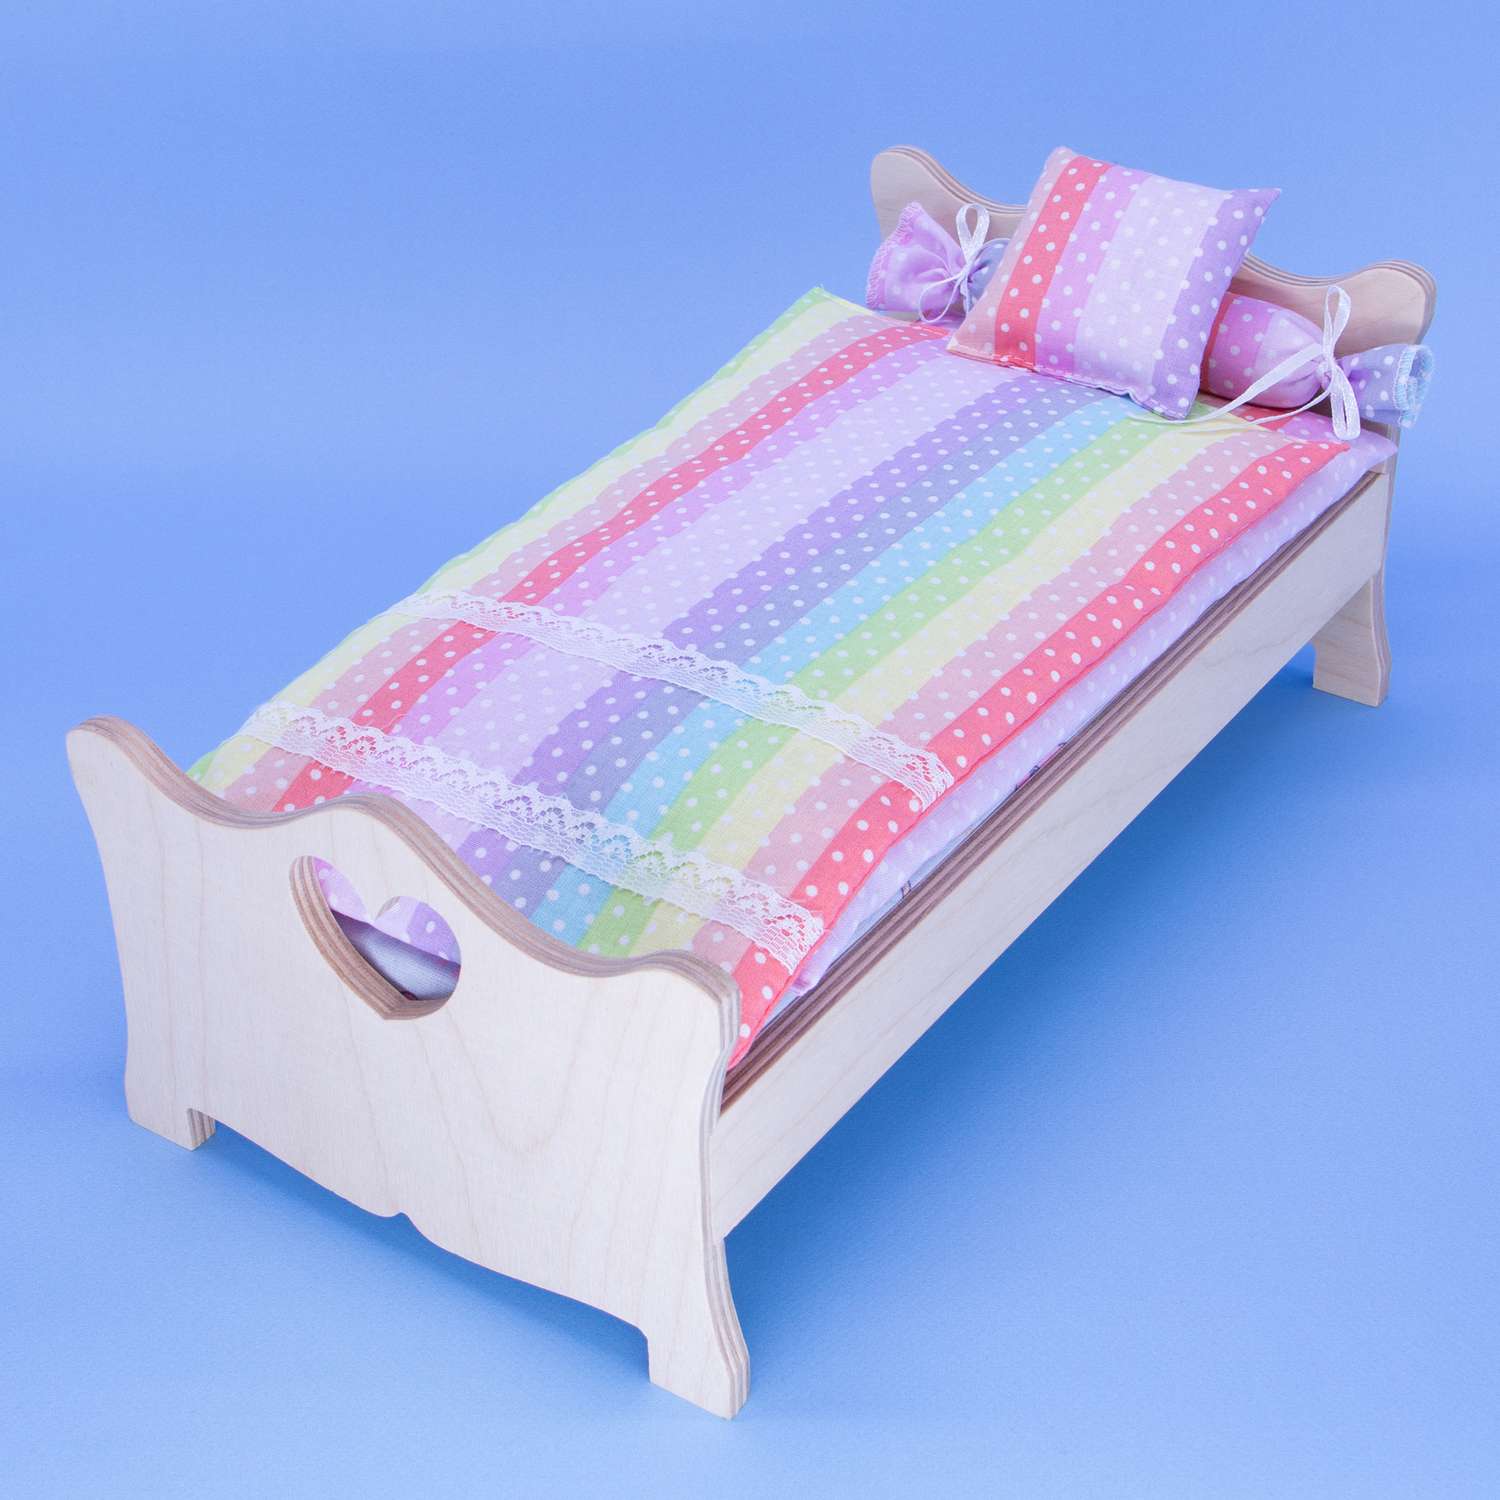 Комлпект постельного белья Модница для куклы 29 см 2002 разноцветный 2002разноцветный - фото 12